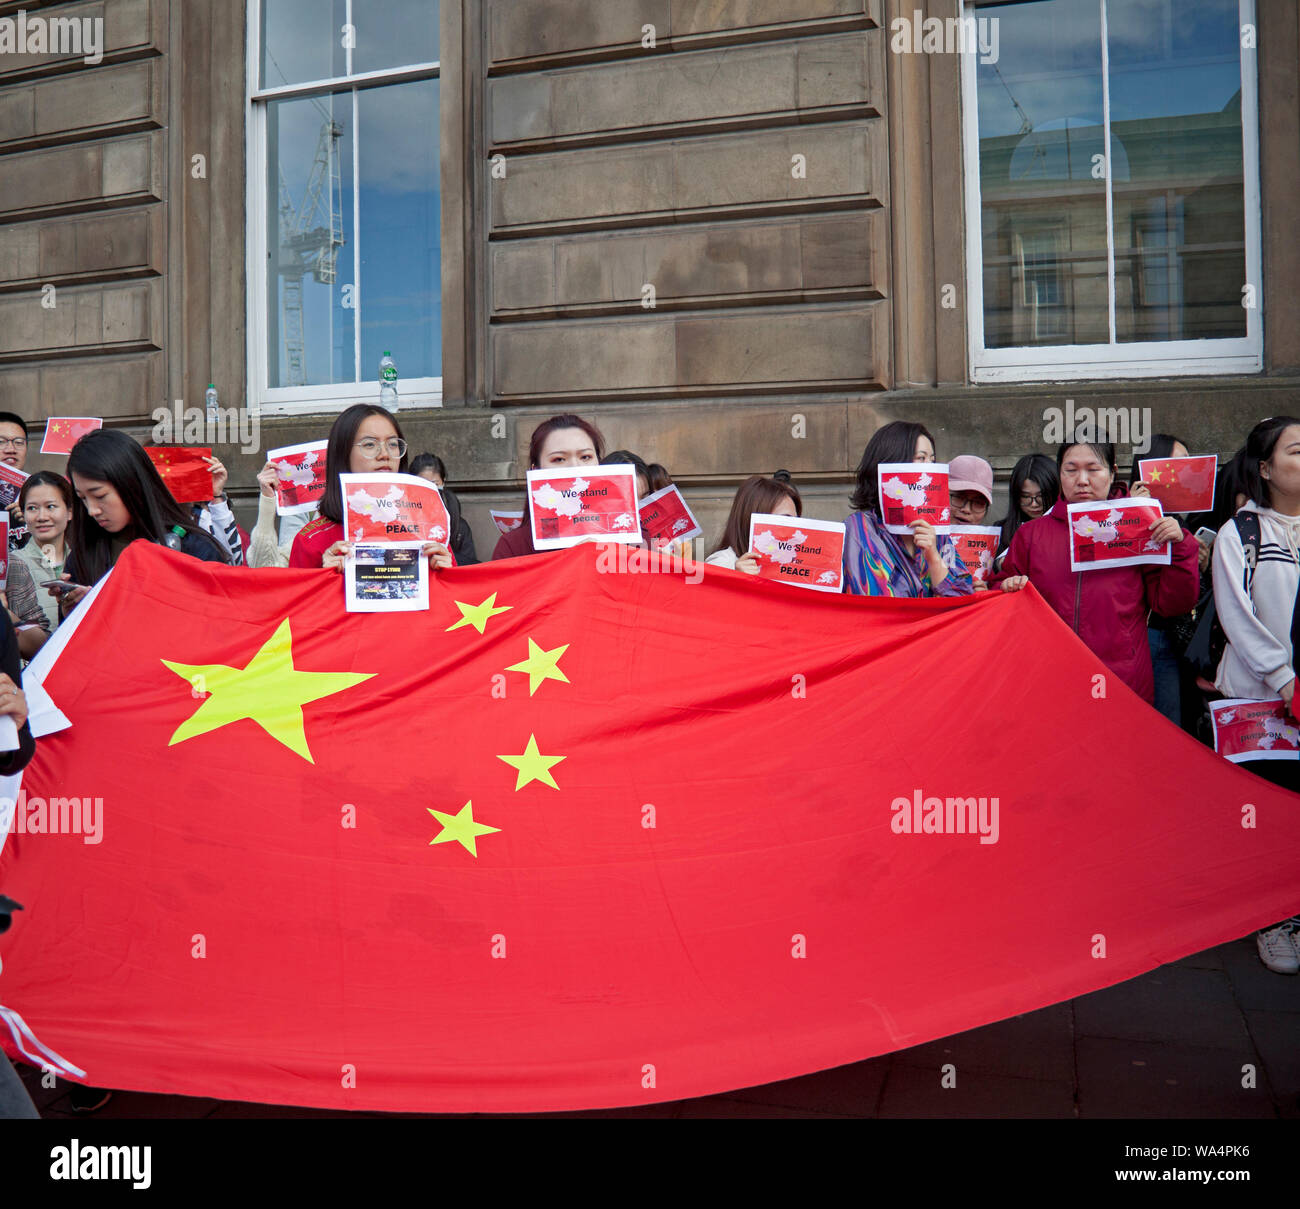 Edinburgh, Schottland, Großbritannien. 17. August 2019. Chinesisch in ruhiger Lage im Stadtzentrum mit Plakaten zu fragen 'was geschah am 8.11. in Hongkong" demonstrieren. "Polizeibeamte sind ernsthaft von der Benzin Bombe aus dem randalierer abgefeuert wurden verletzt." Stockfoto